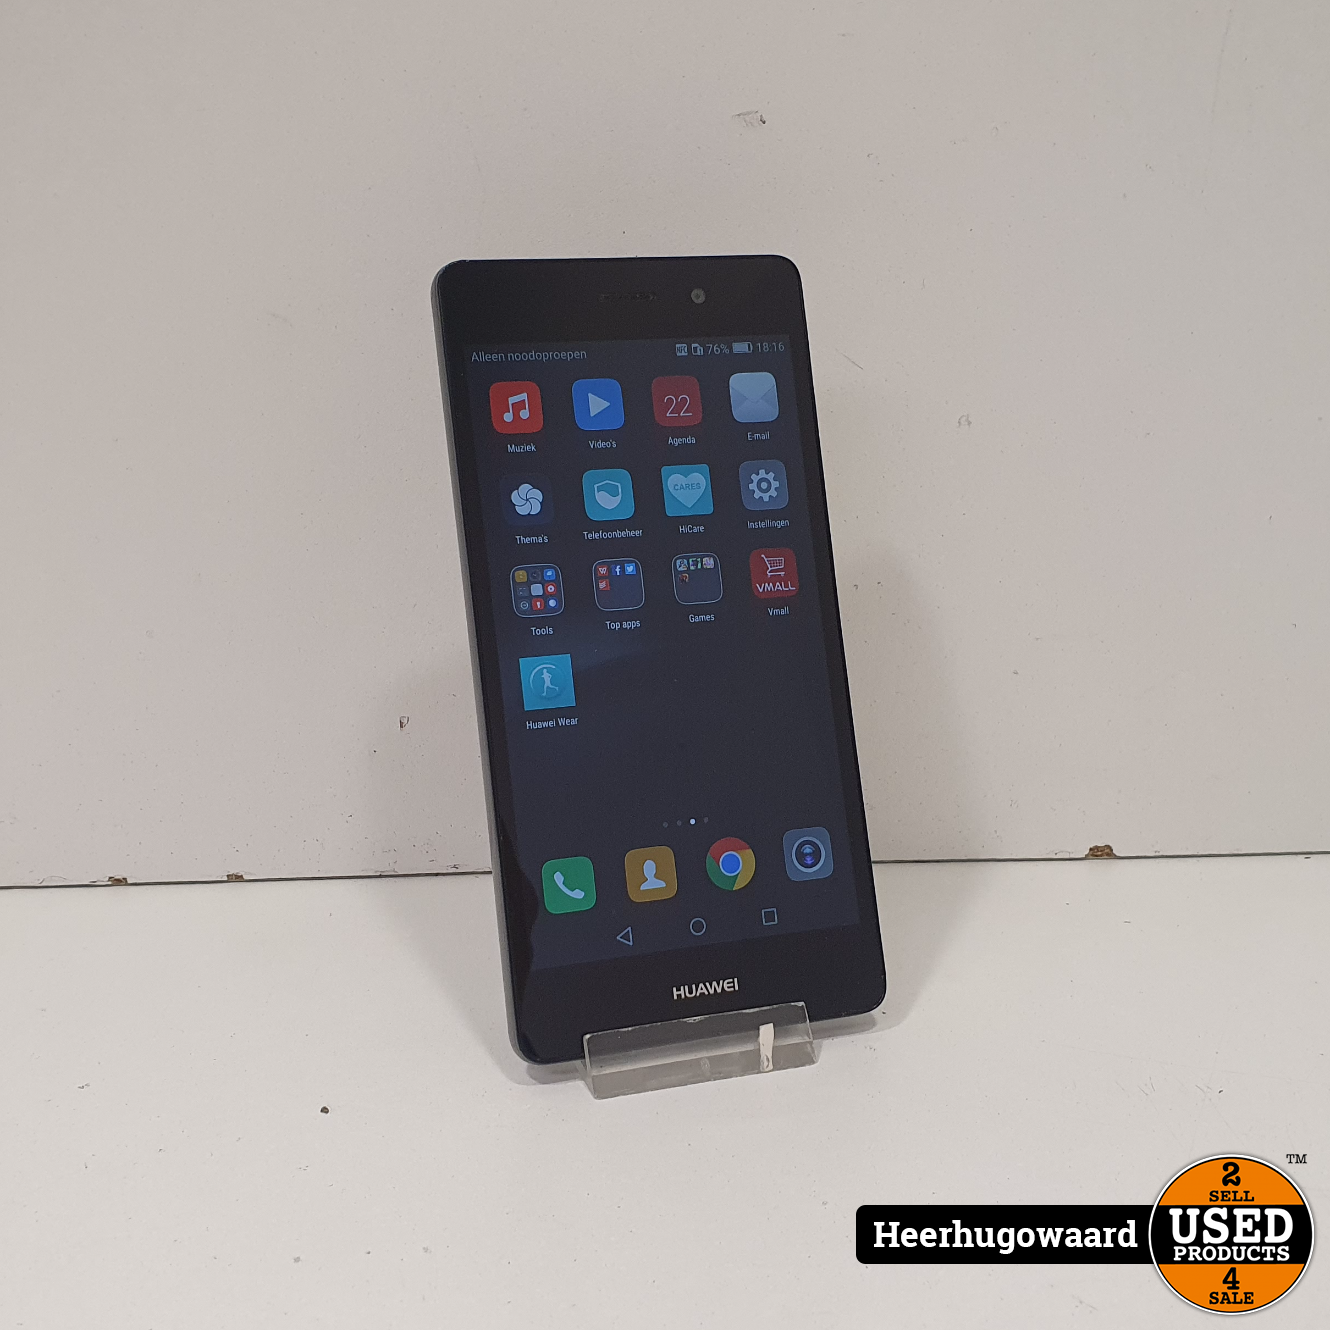 tarief Beide schild Huawei P8 Lite 16GB Black in Goede Staat - Used Products Heerhugowaard